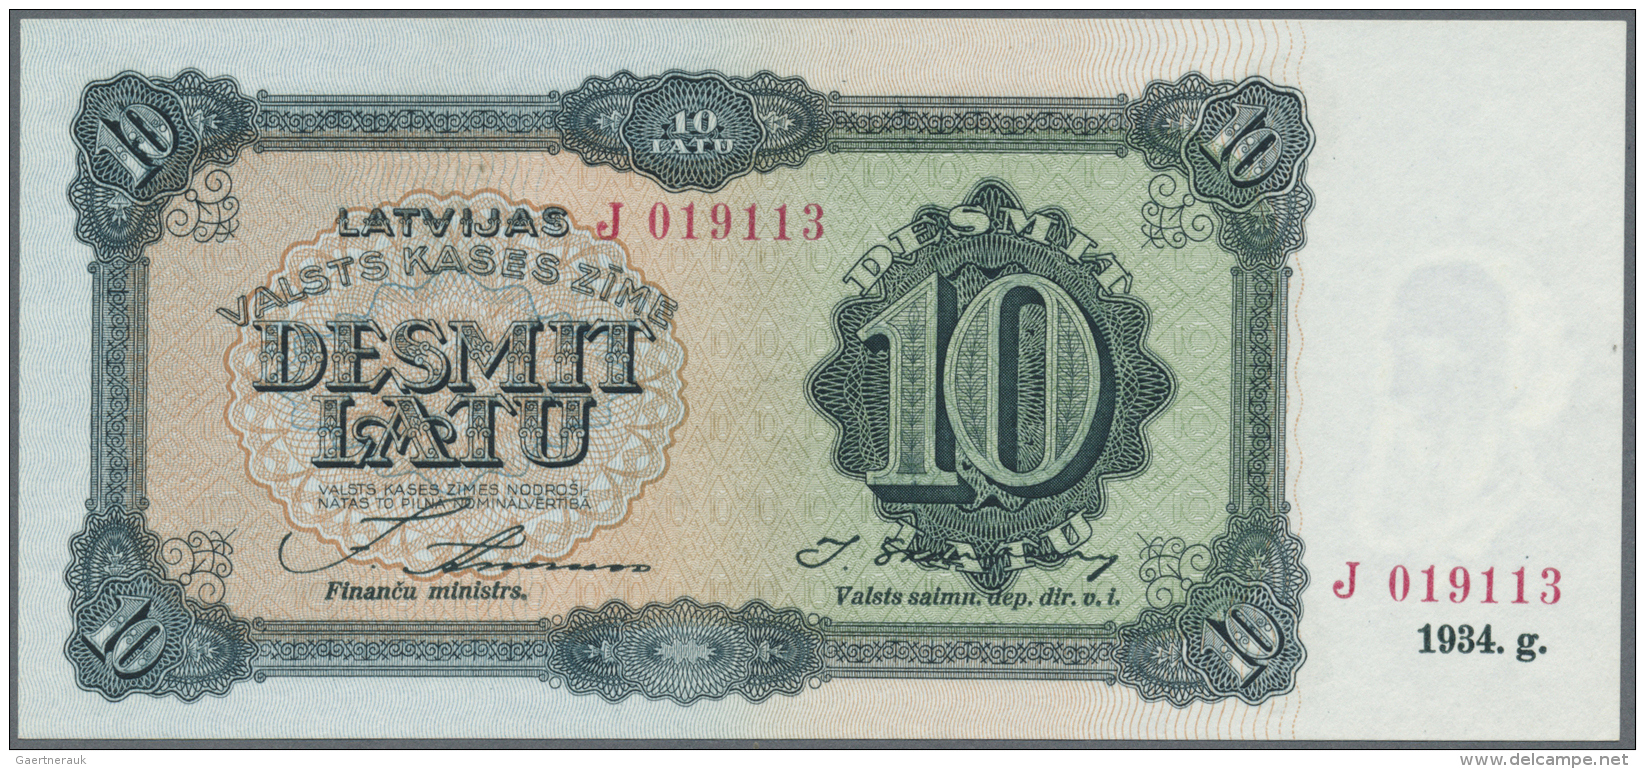 Latvia /Lettland: 10 Latu 1934 P. 25c, Issued Note, Series J, Sign. Annuss, In Crisp Original Condition: UNC. - Lettonia